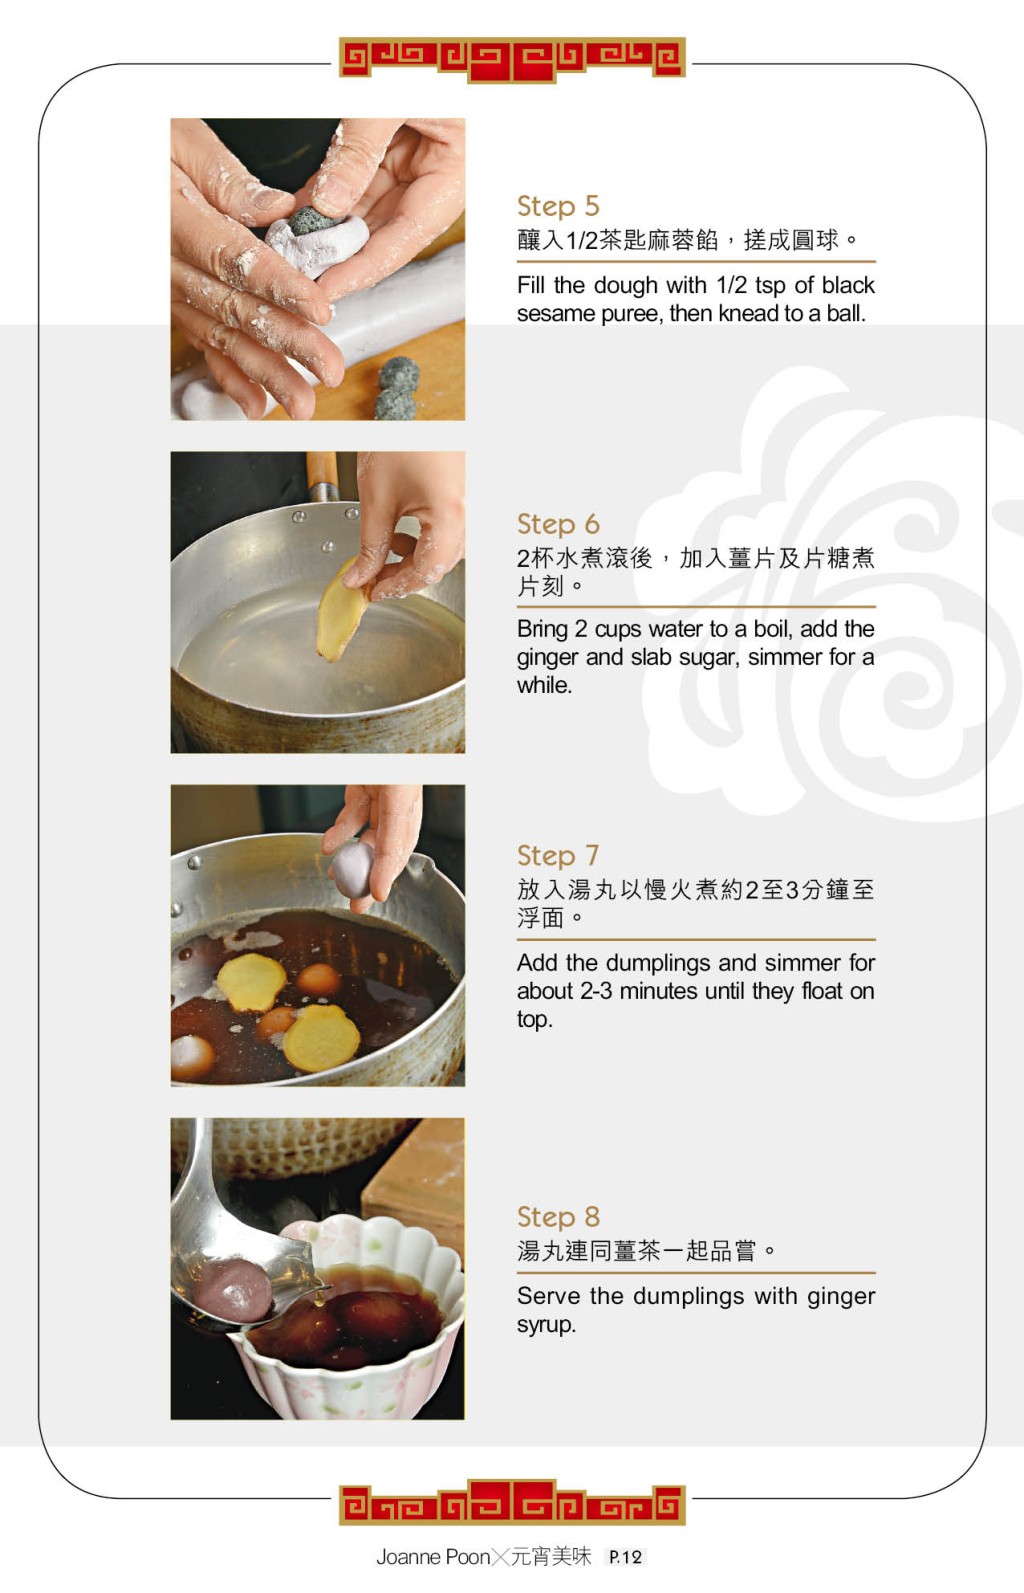 紫霞麻蓉湯圓做法簡單。 